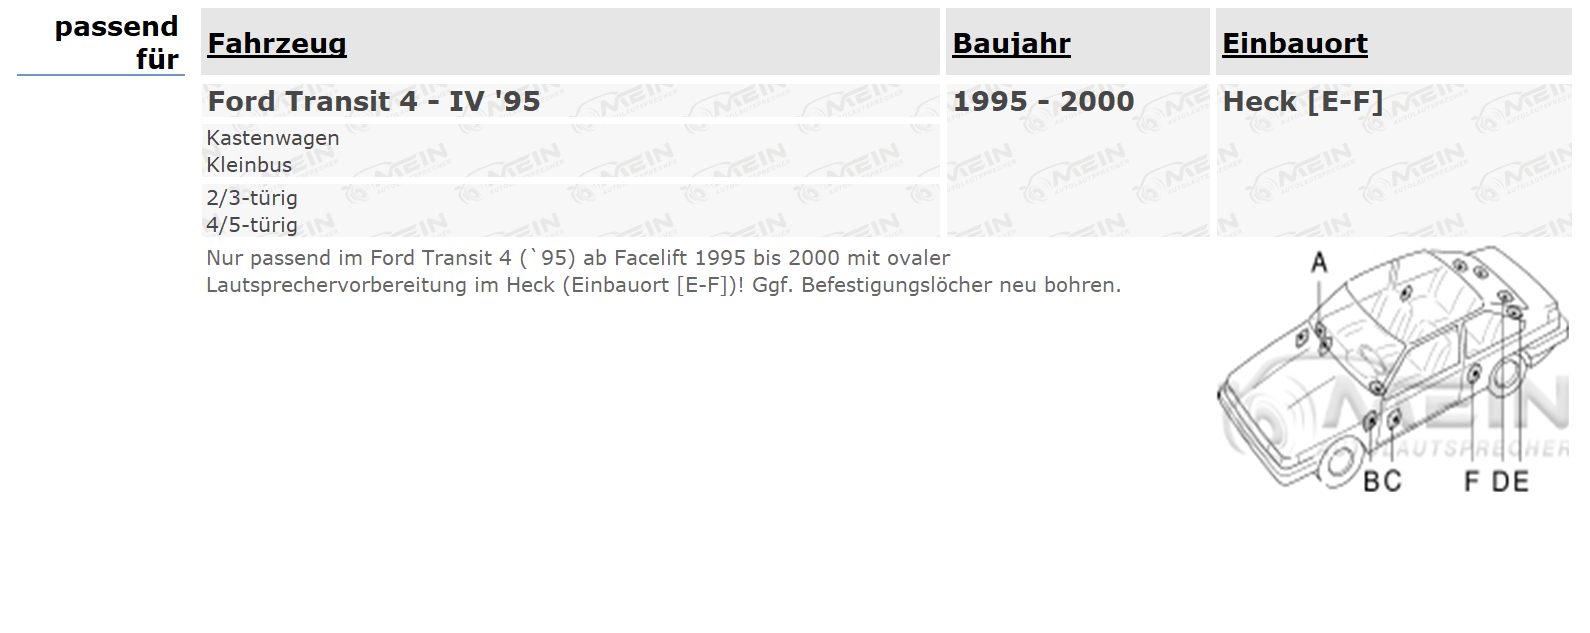 ALPINE LAUTSPRECHER für FORD TRANSIT 4 - IV '95 1995-2000 Heck Hinten